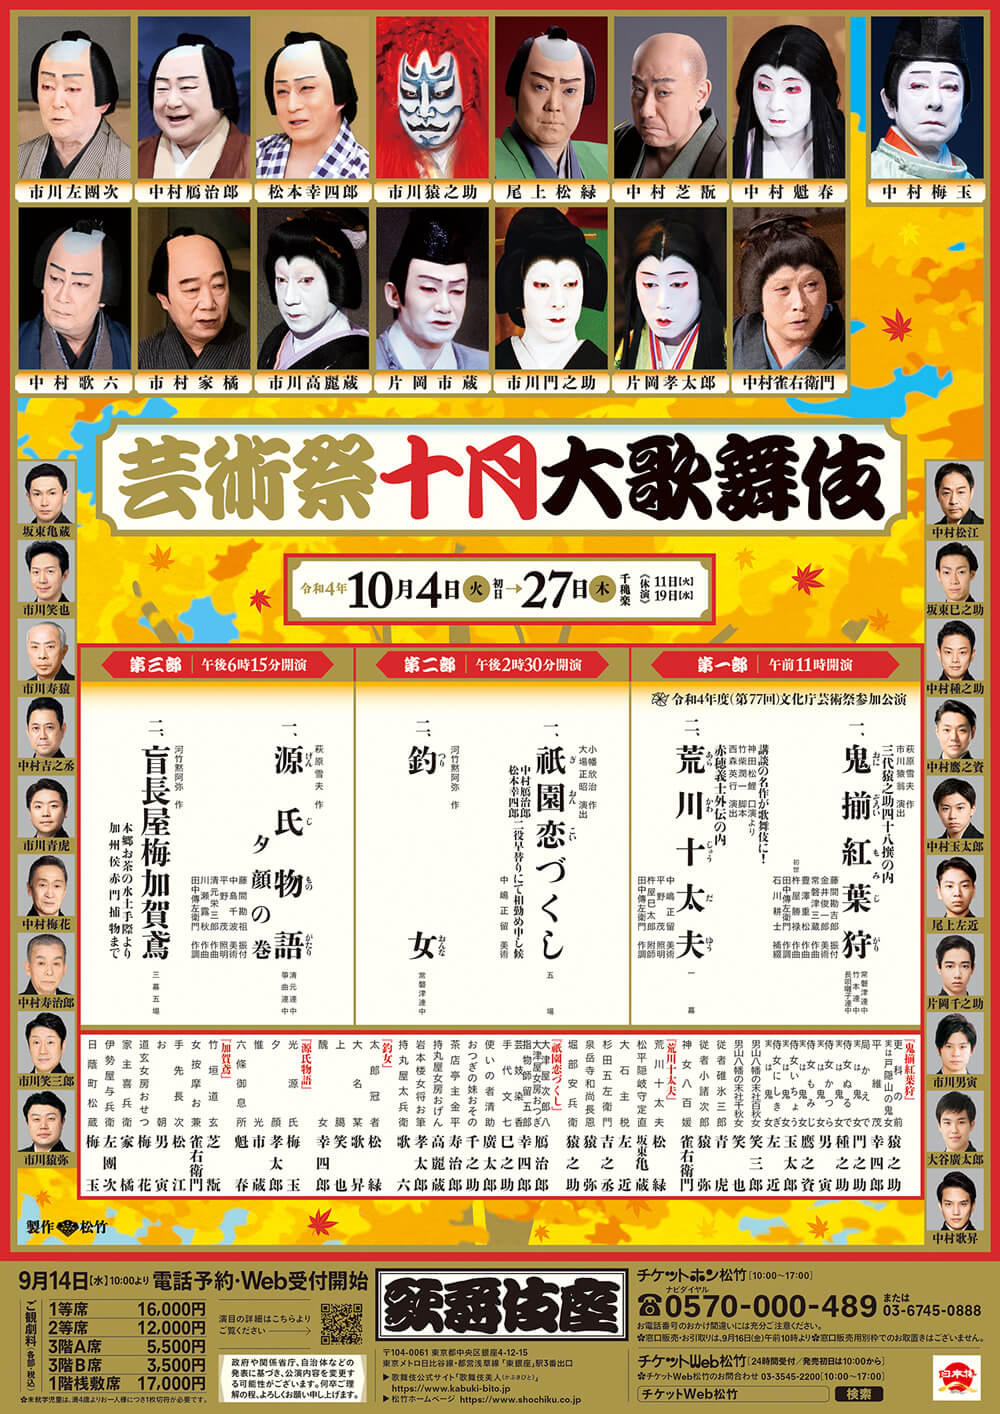 October Program at the kabukiza